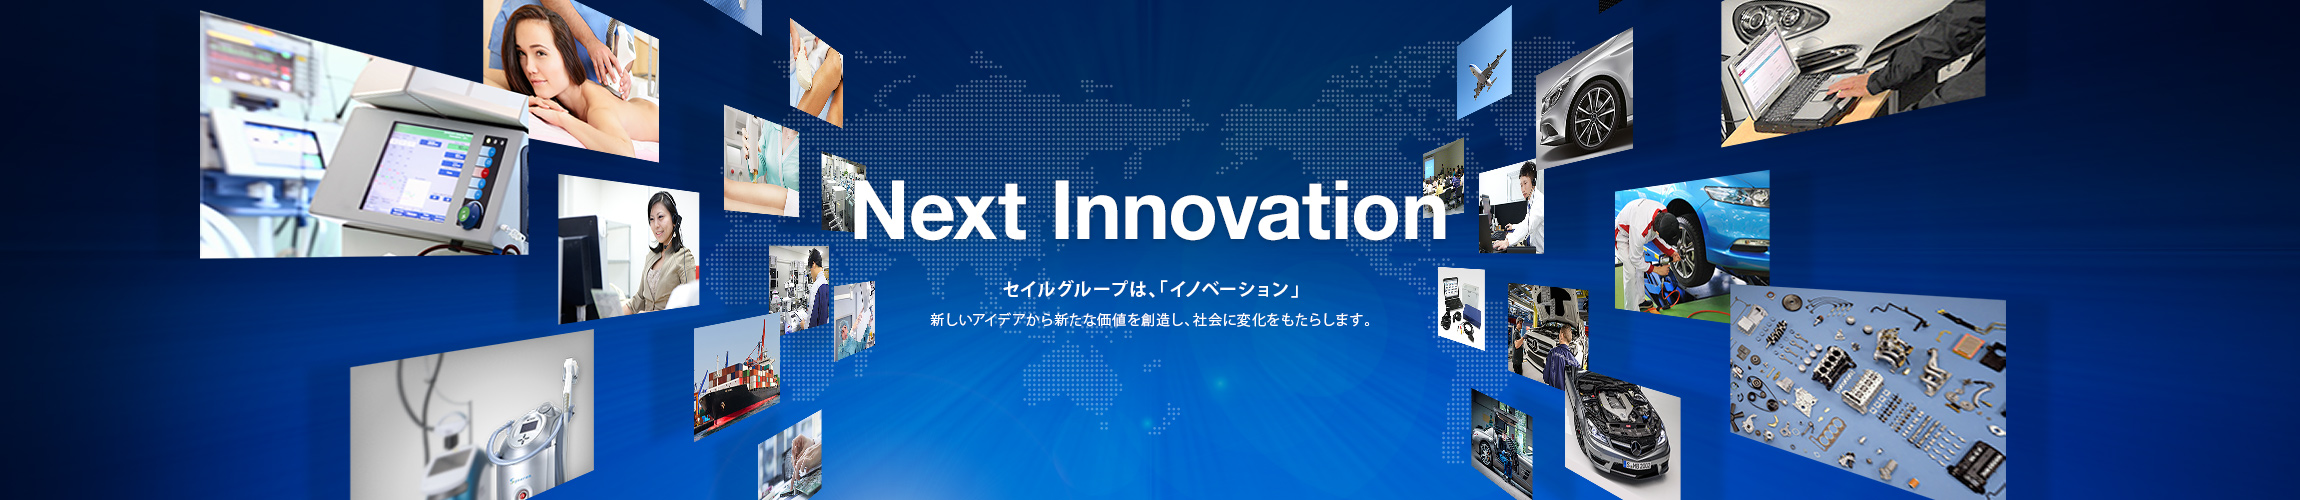 Next Innovation セイルグループは、「イノベーション」新しいアイデアから新たな価値を創造し、社会に変化をもたらします。